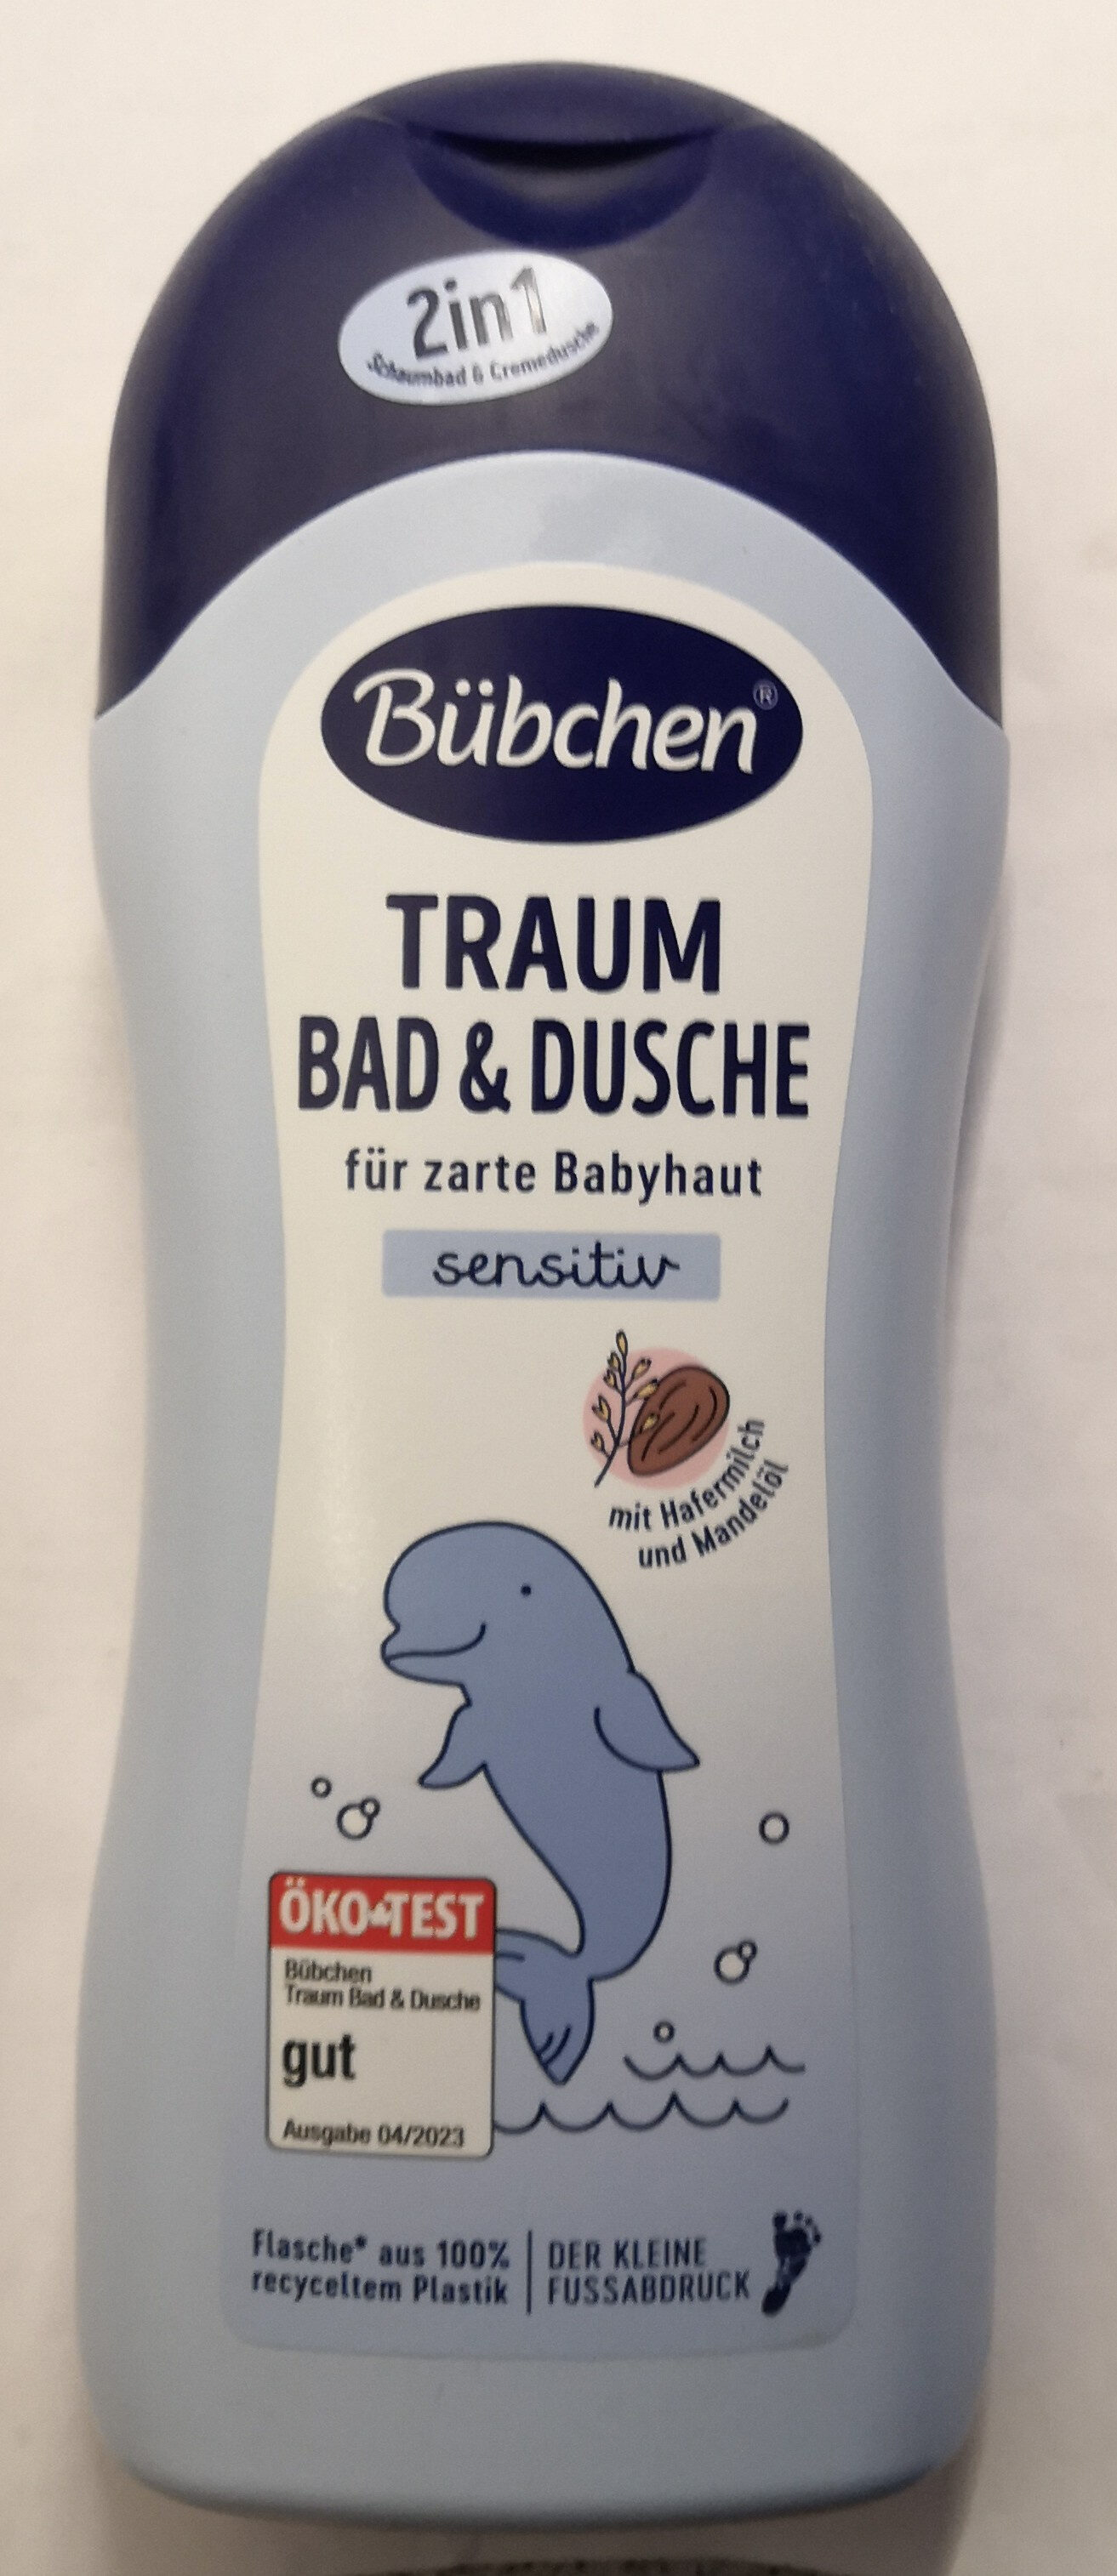 Traum sensitiv Bad & Dusche - Product - de